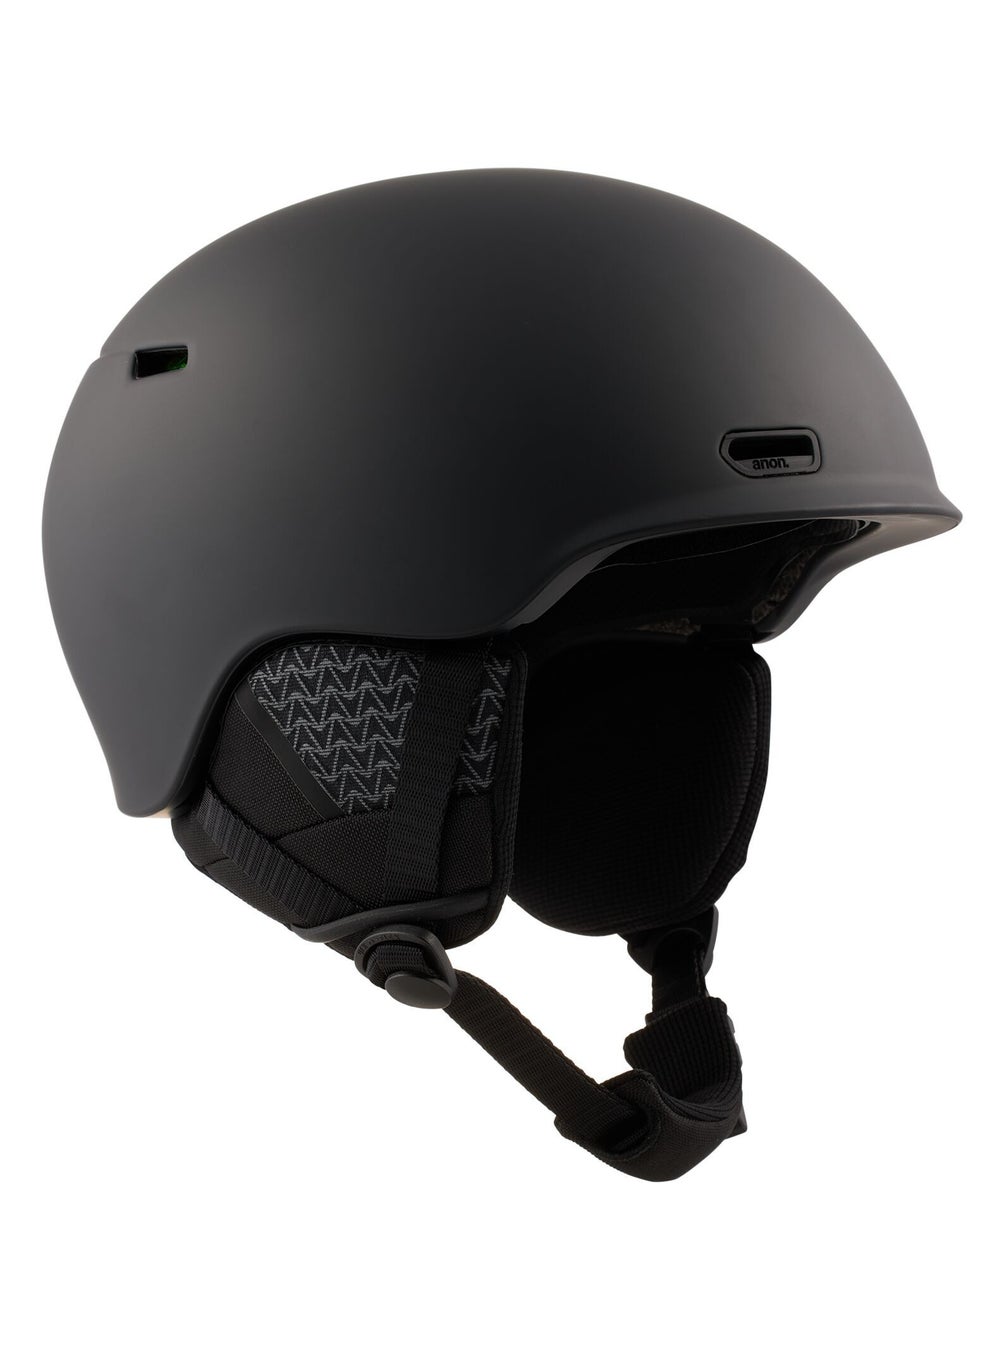 3段階の構造変化で頭部を保護する、最先端の衝撃吸収技術 WaveCel スノースポーツ用としてAnonが唯一採用するテクノロジーを、今季はキッズにも投入 Anon オスロー WaveCel ヘルメットのサブ画像5